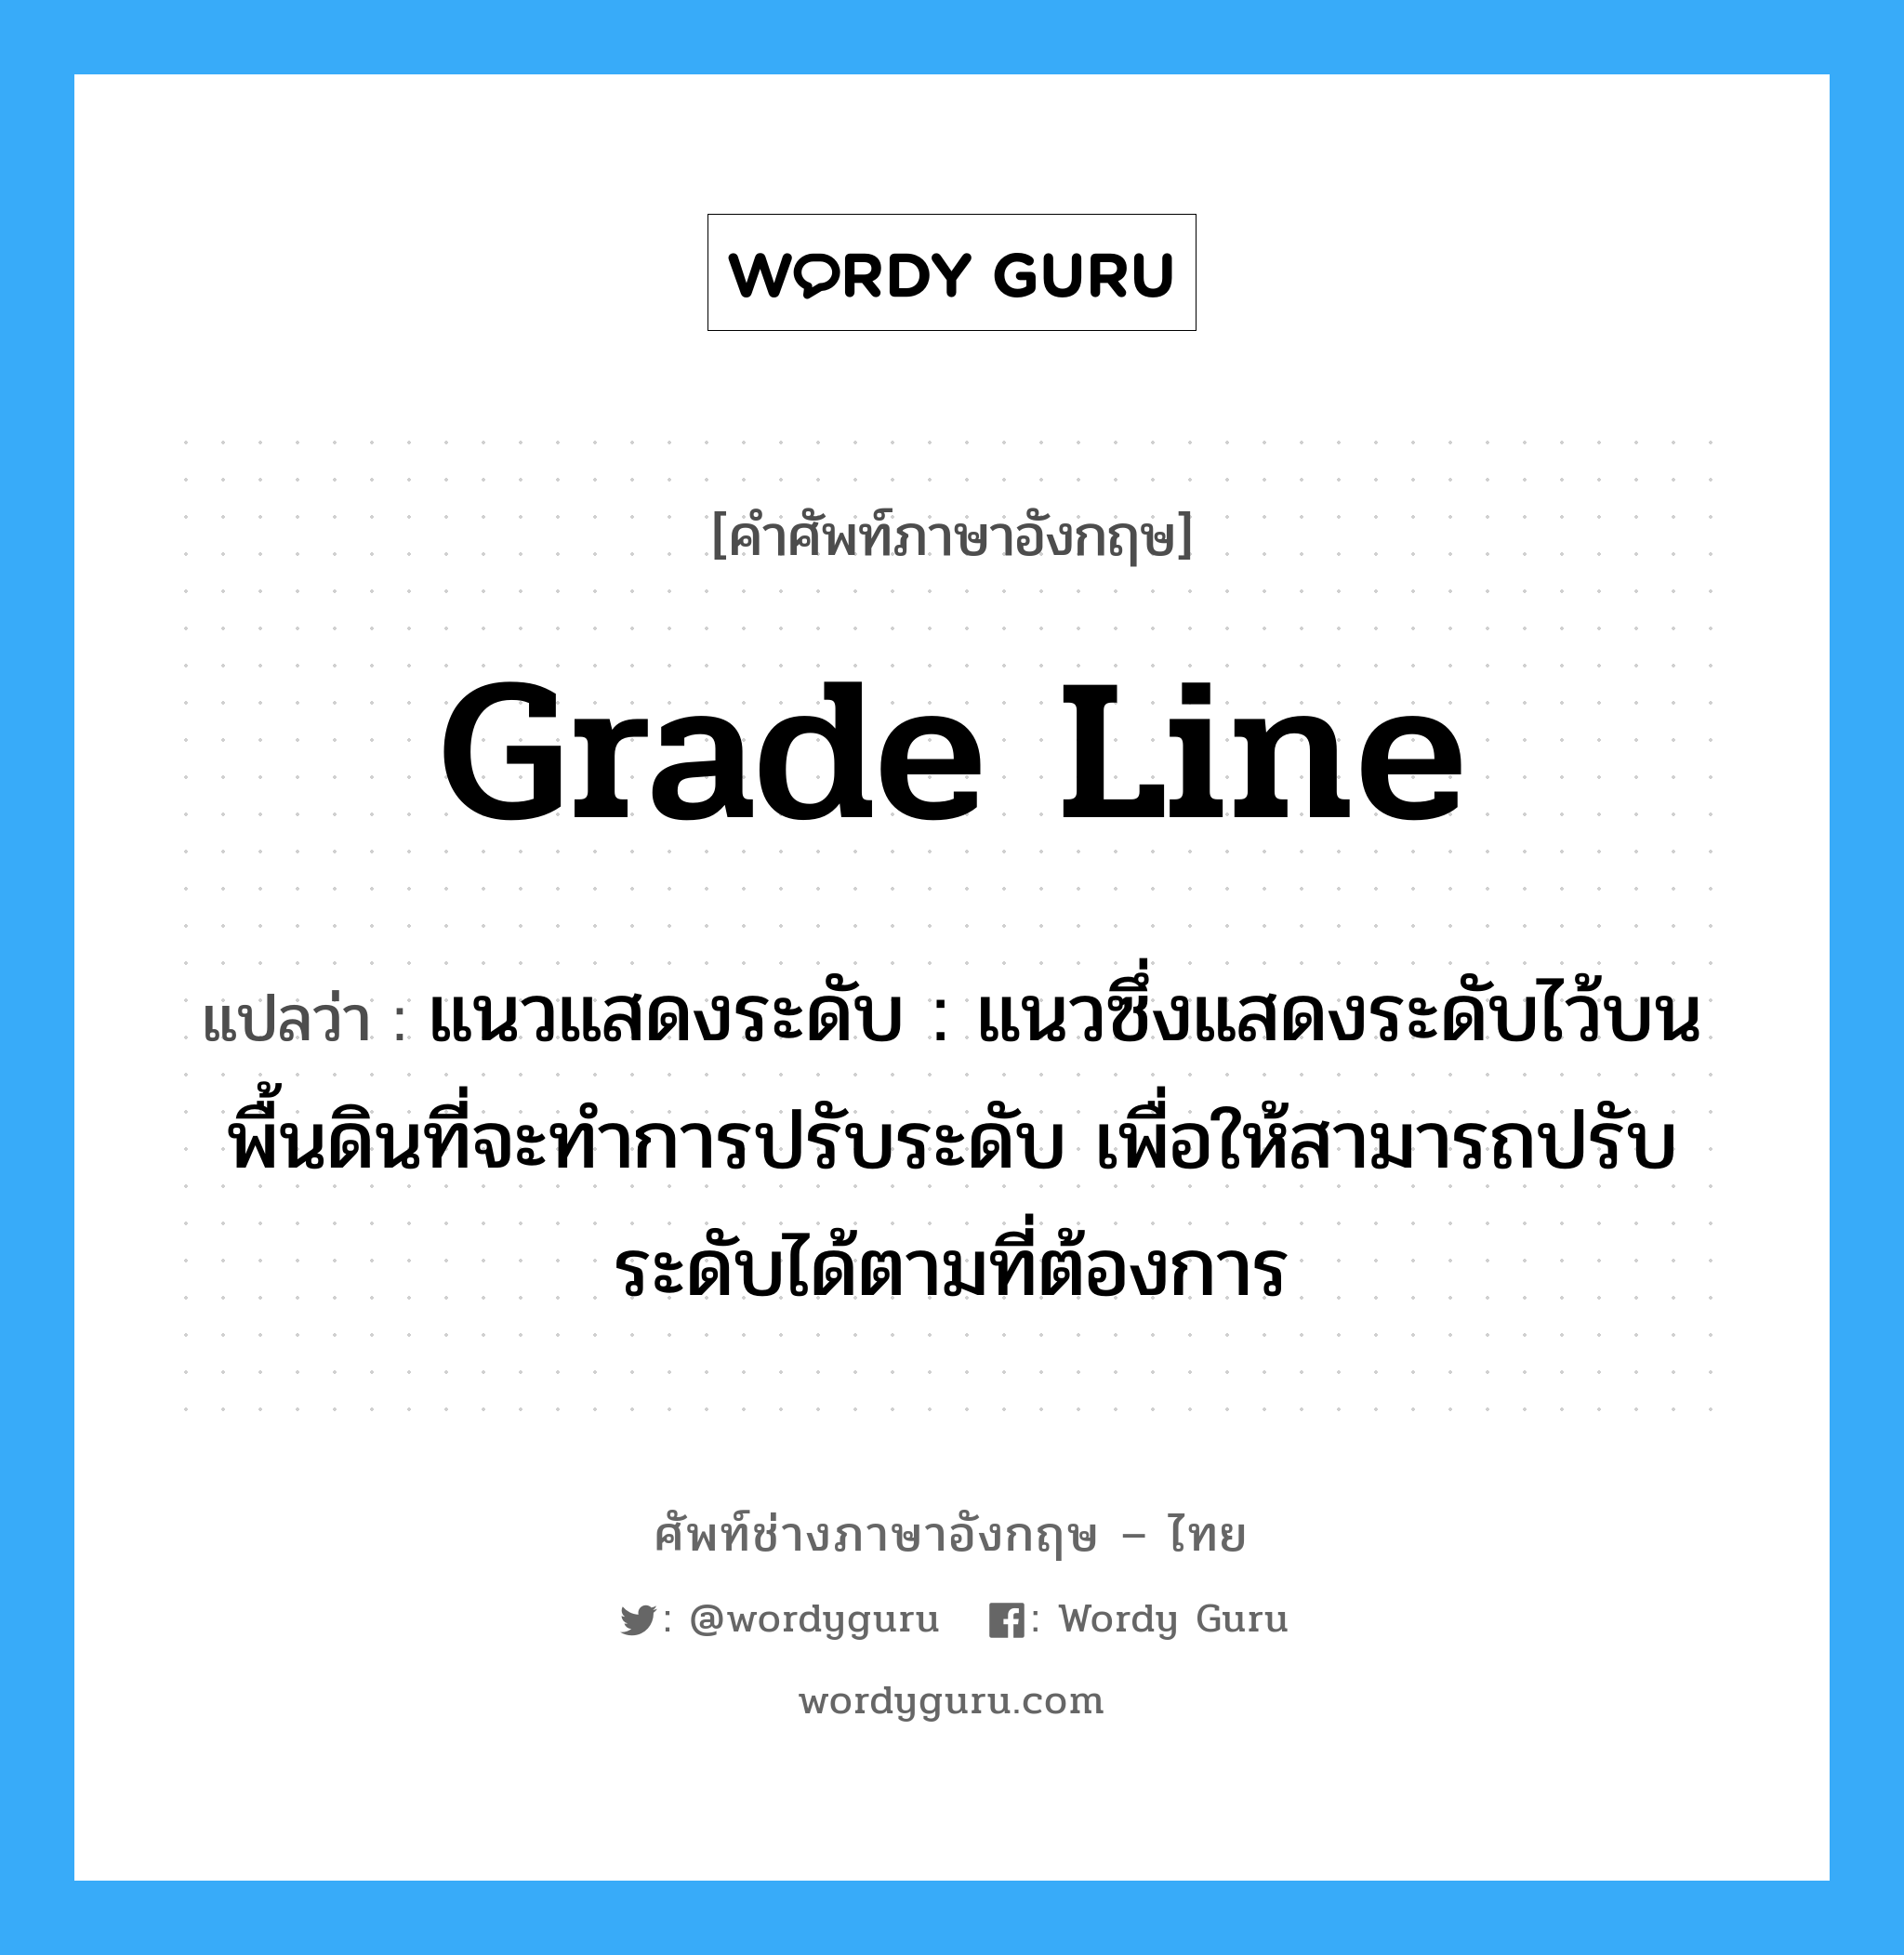 grade line แปลว่า?, คำศัพท์ช่างภาษาอังกฤษ - ไทย grade line คำศัพท์ภาษาอังกฤษ grade line แปลว่า แนวแสดงระดับ : แนวซึ่งแสดงระดับไว้บนพื้นดินที่จะทำการปรับระดับ เพื่อให้สามารถปรับระดับได้ตามที่ต้องการ